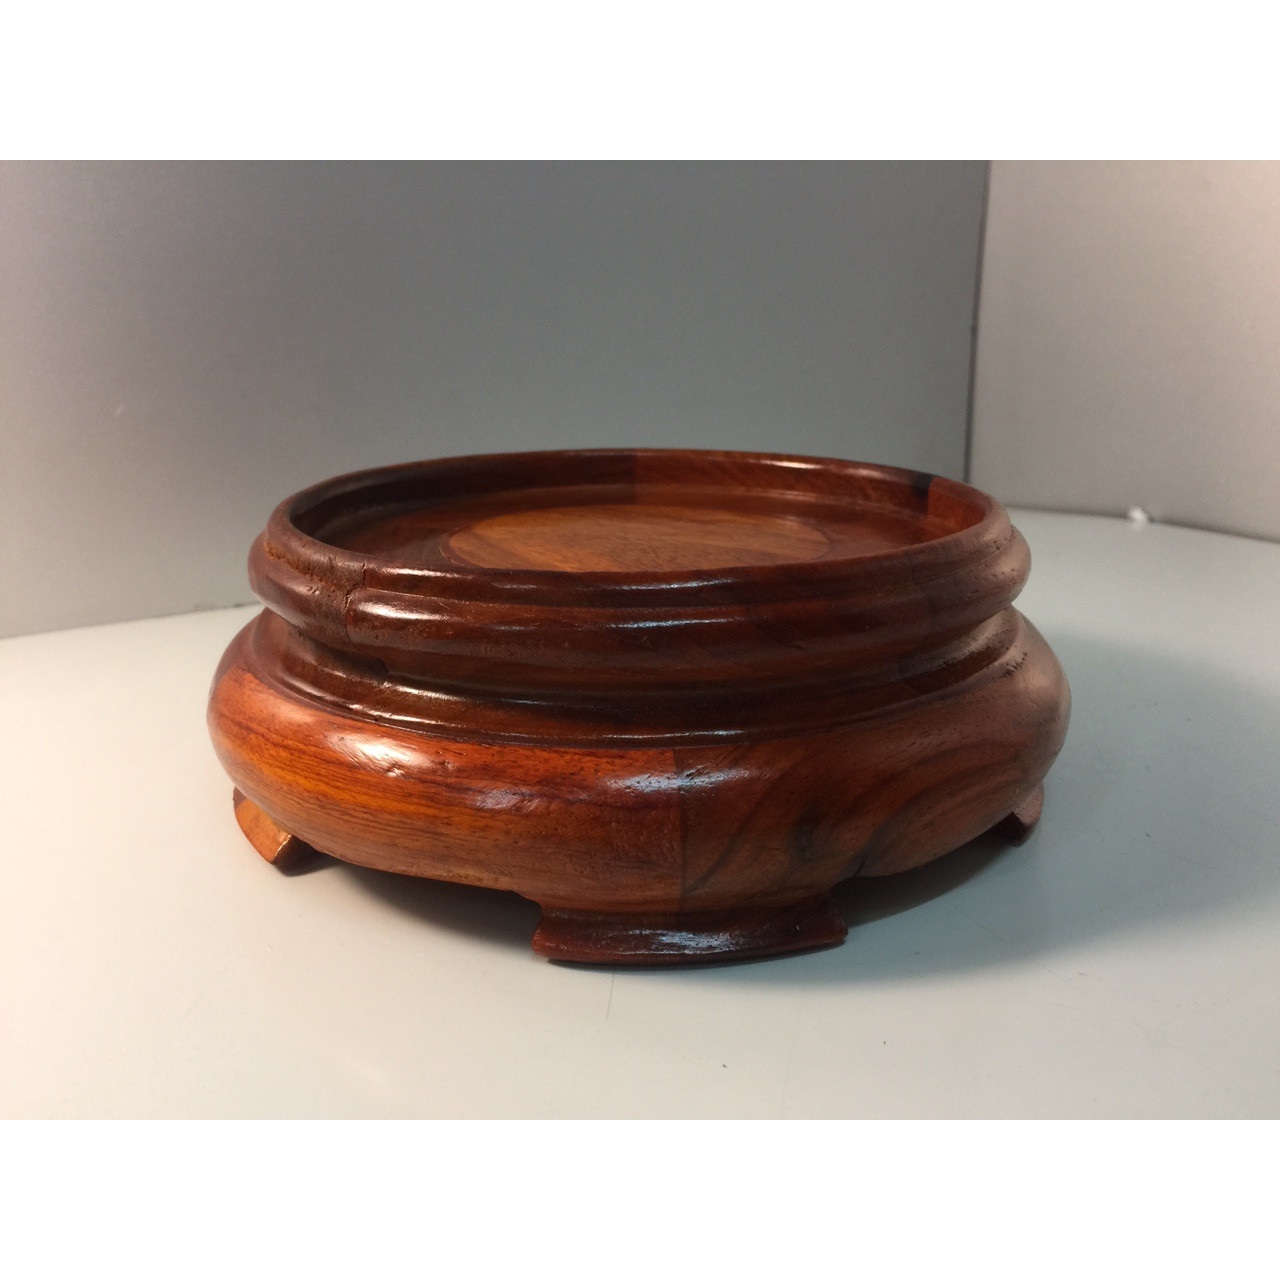 Đế Bát Hương chất liệu gỗ hương (kê bát hương) - 5,5x16 cm